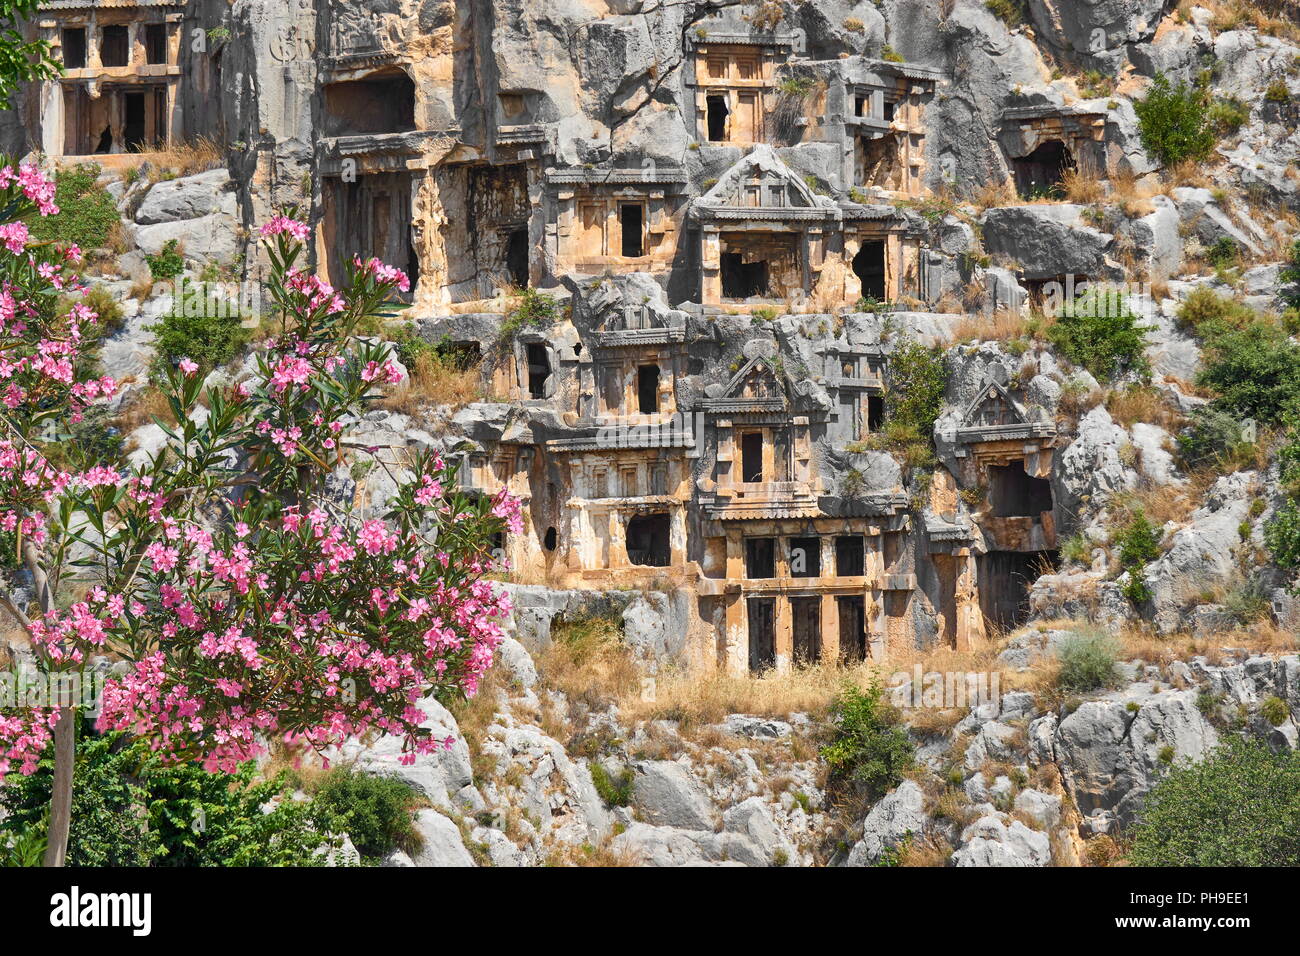 El licio tumbas de roca, Myra (Demre), Turquía Foto de stock